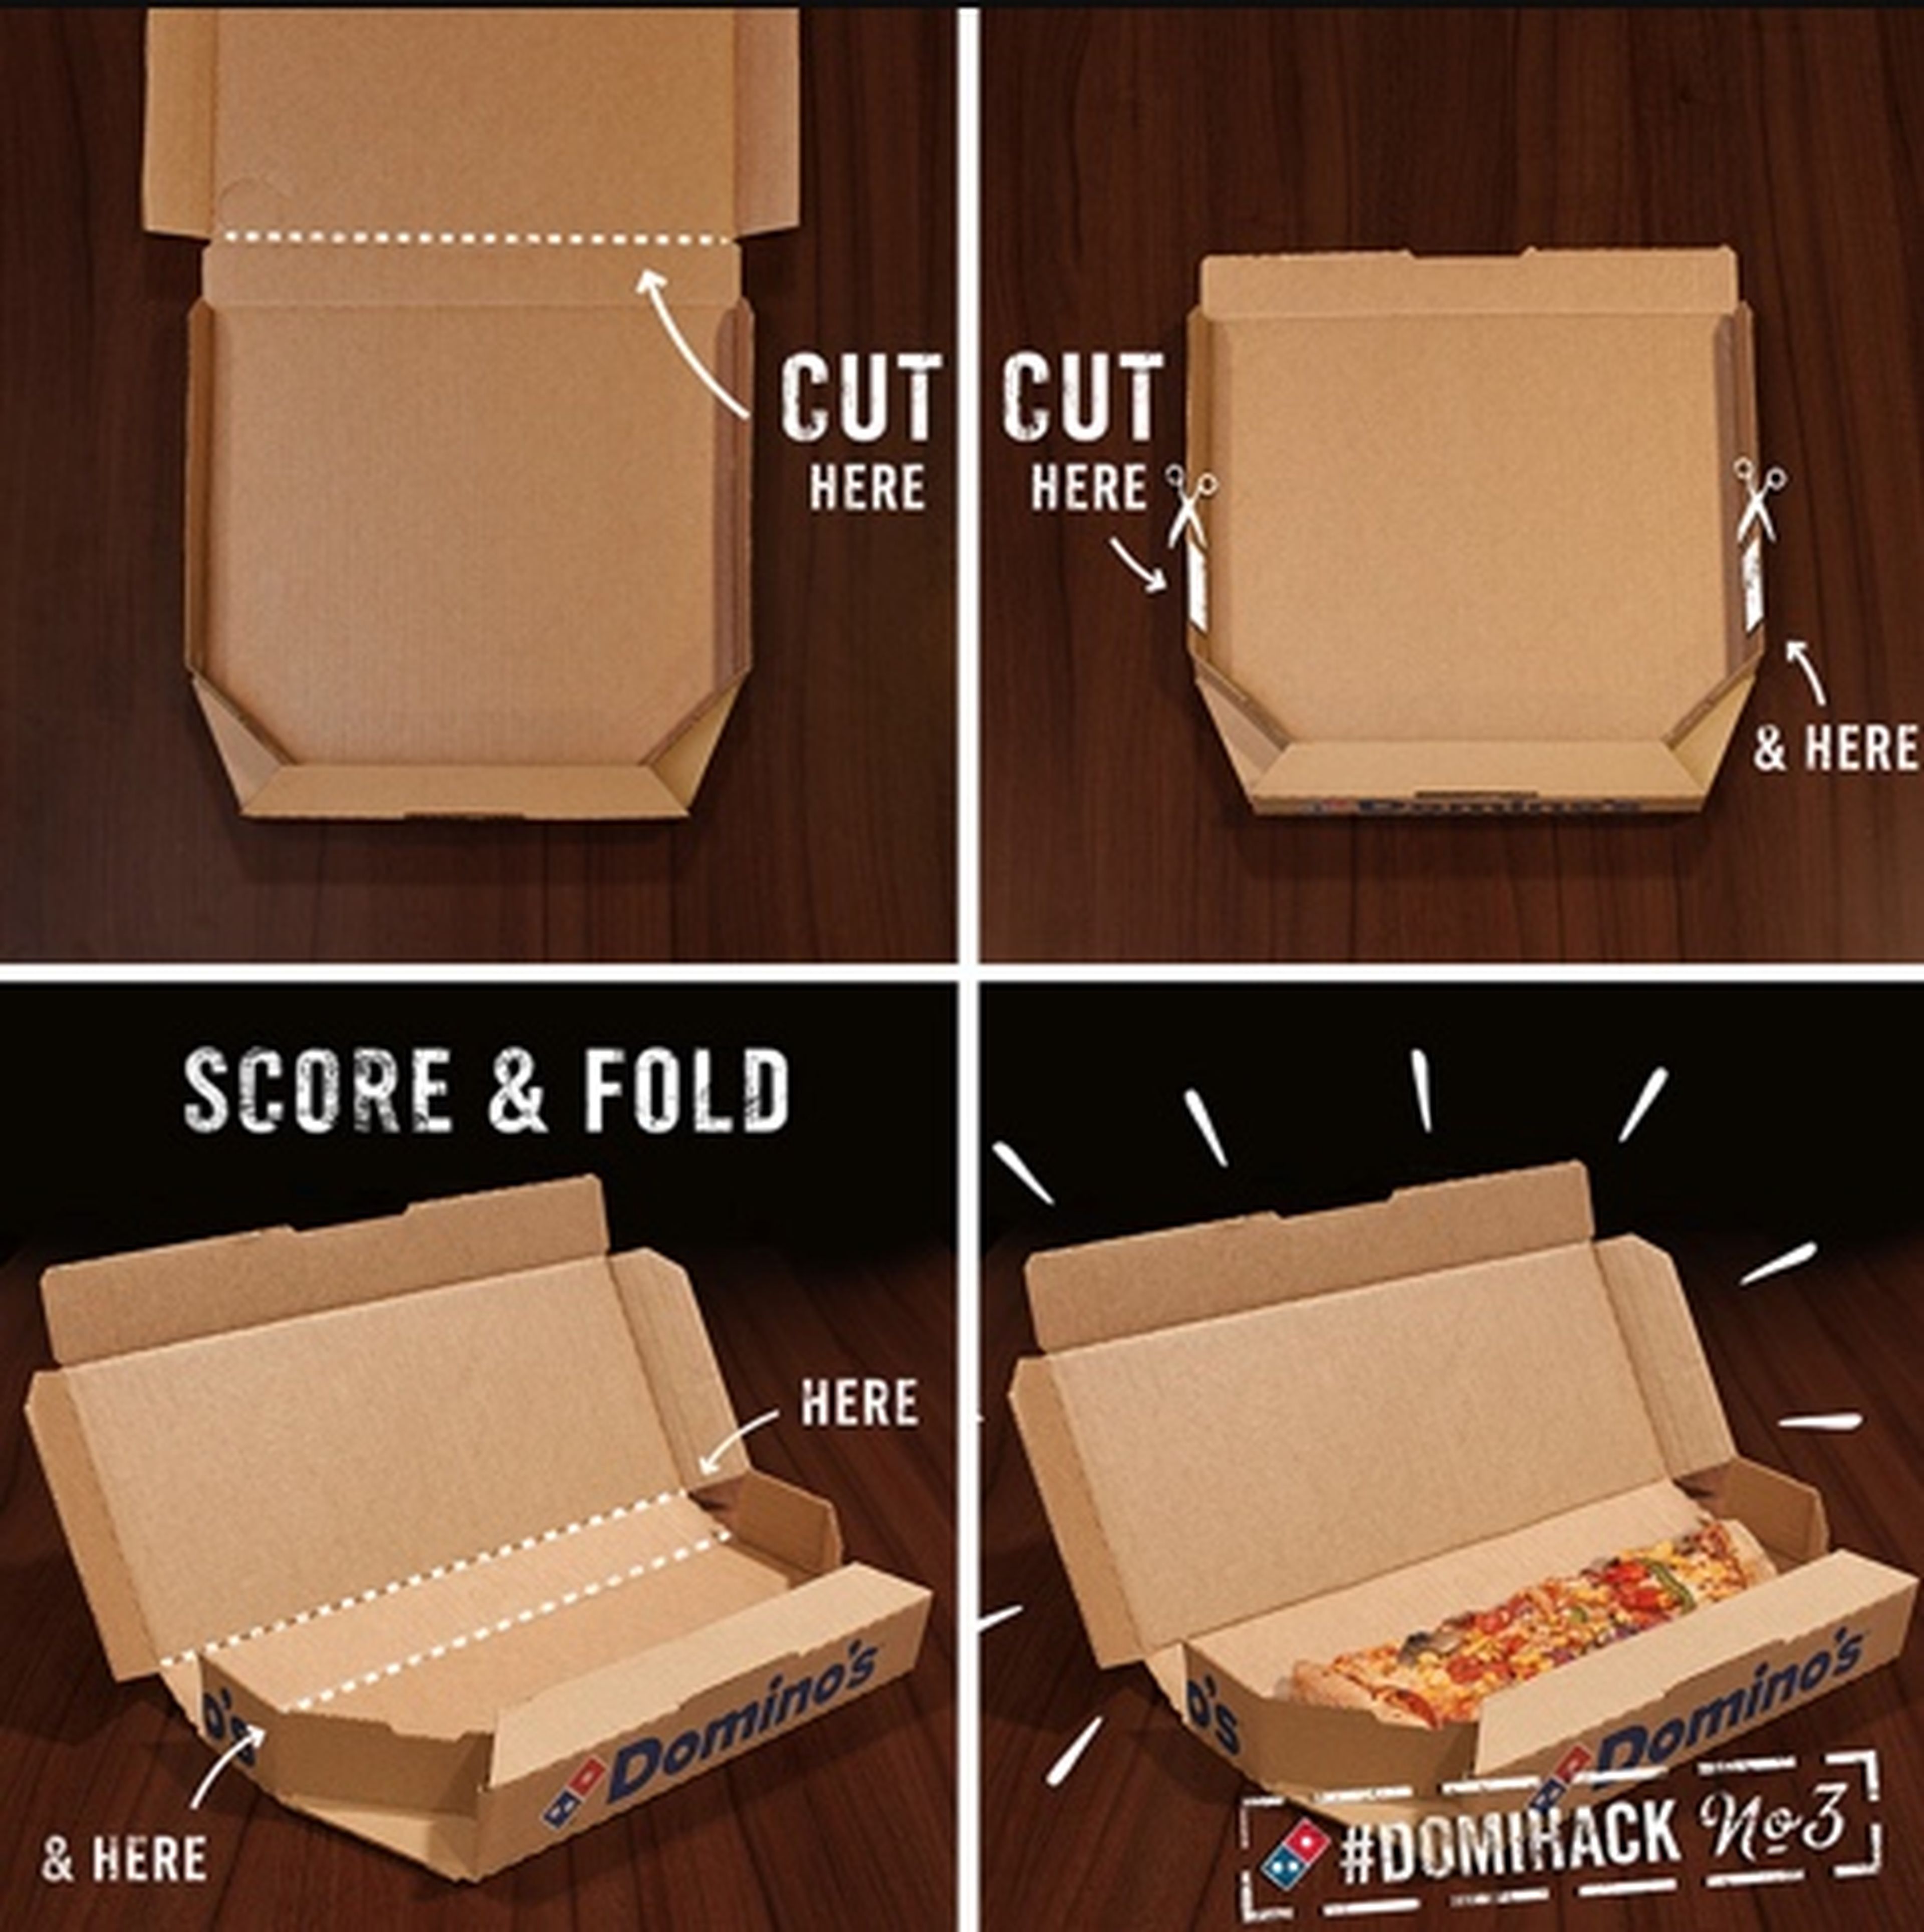 Caja de pizza de Dominos